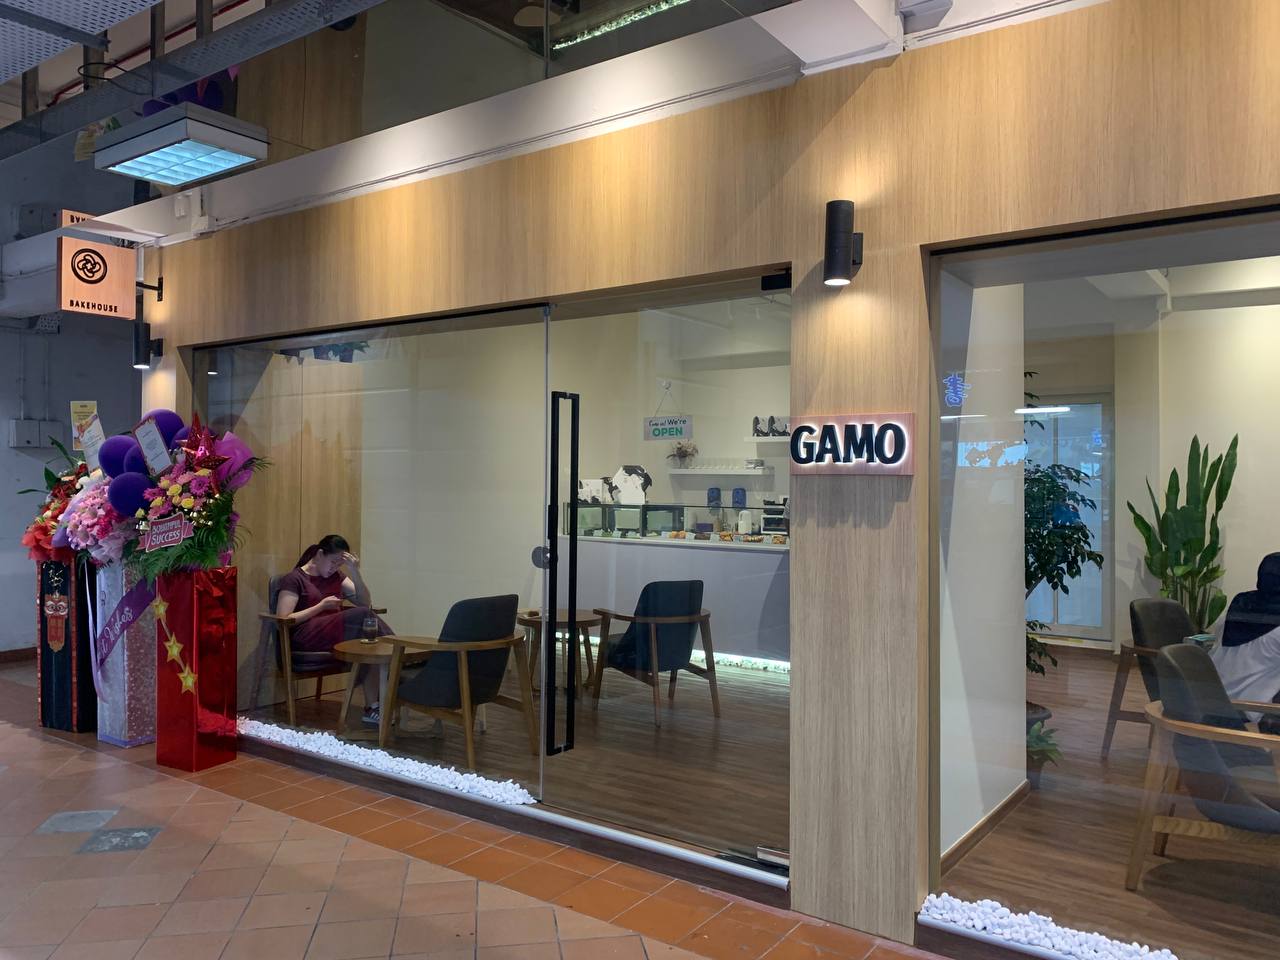 GAMO entrance